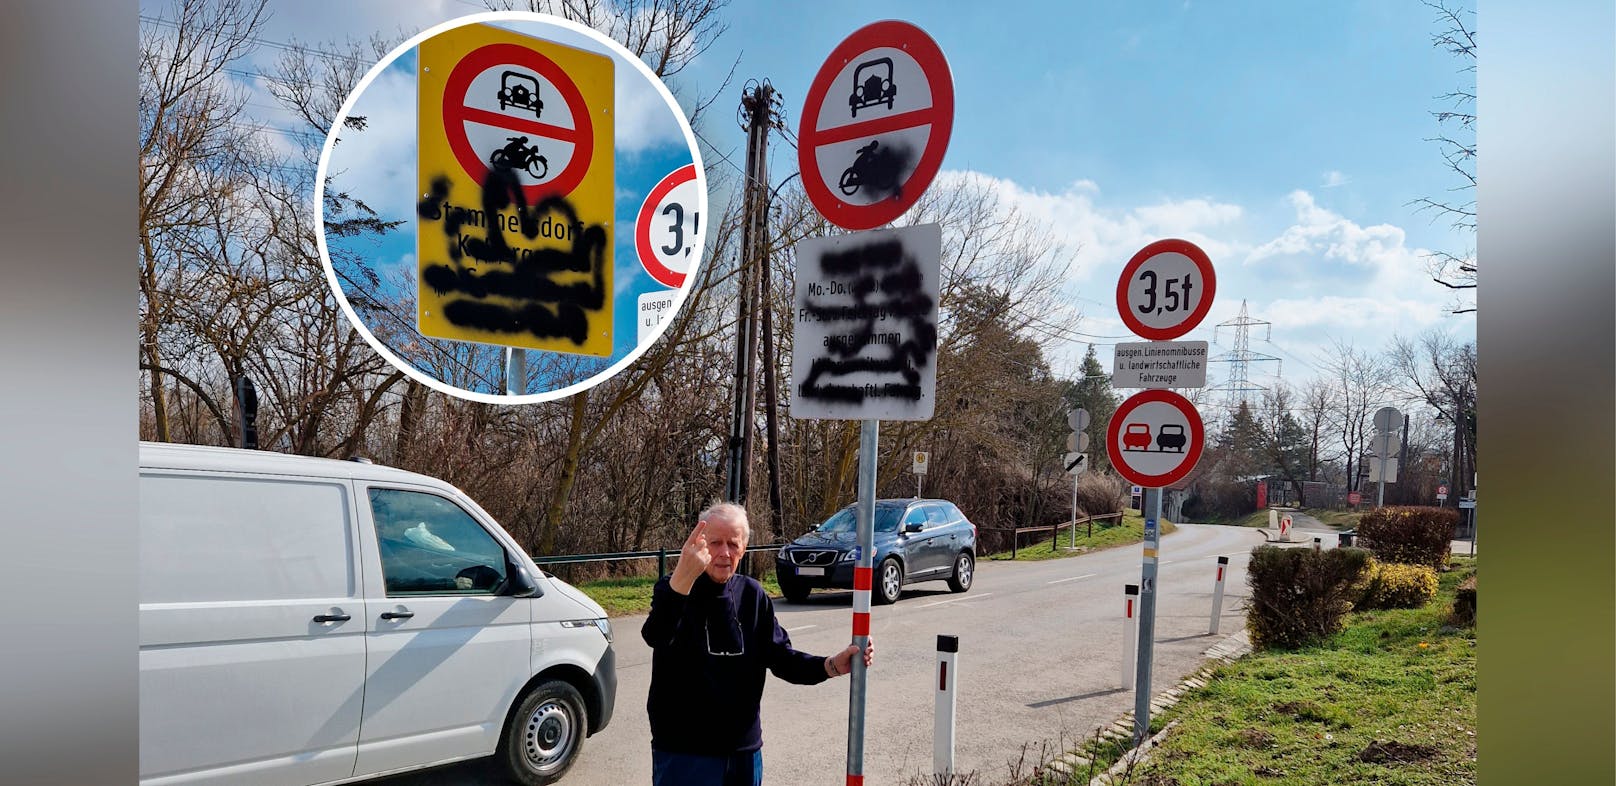 Alt-Bezirksrat Hans Jörg Schimanek ist kein Fan des Durchfahrtsverbots. Tafeln zu beschmieren sei aber "keinesfalls akzeptabel", so Schimanek.